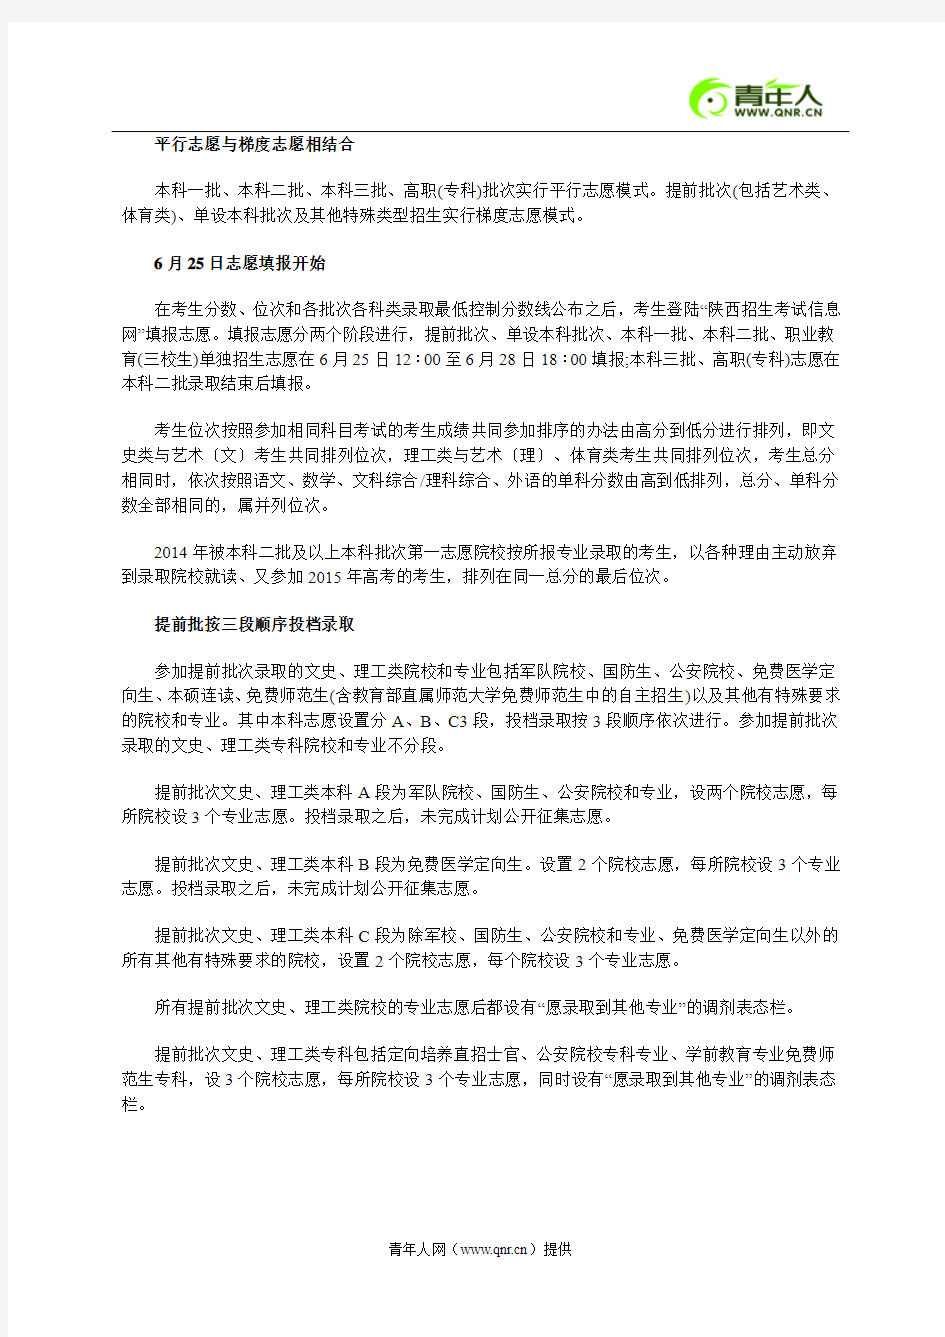 陕西省2015年高考考生手册(内部)